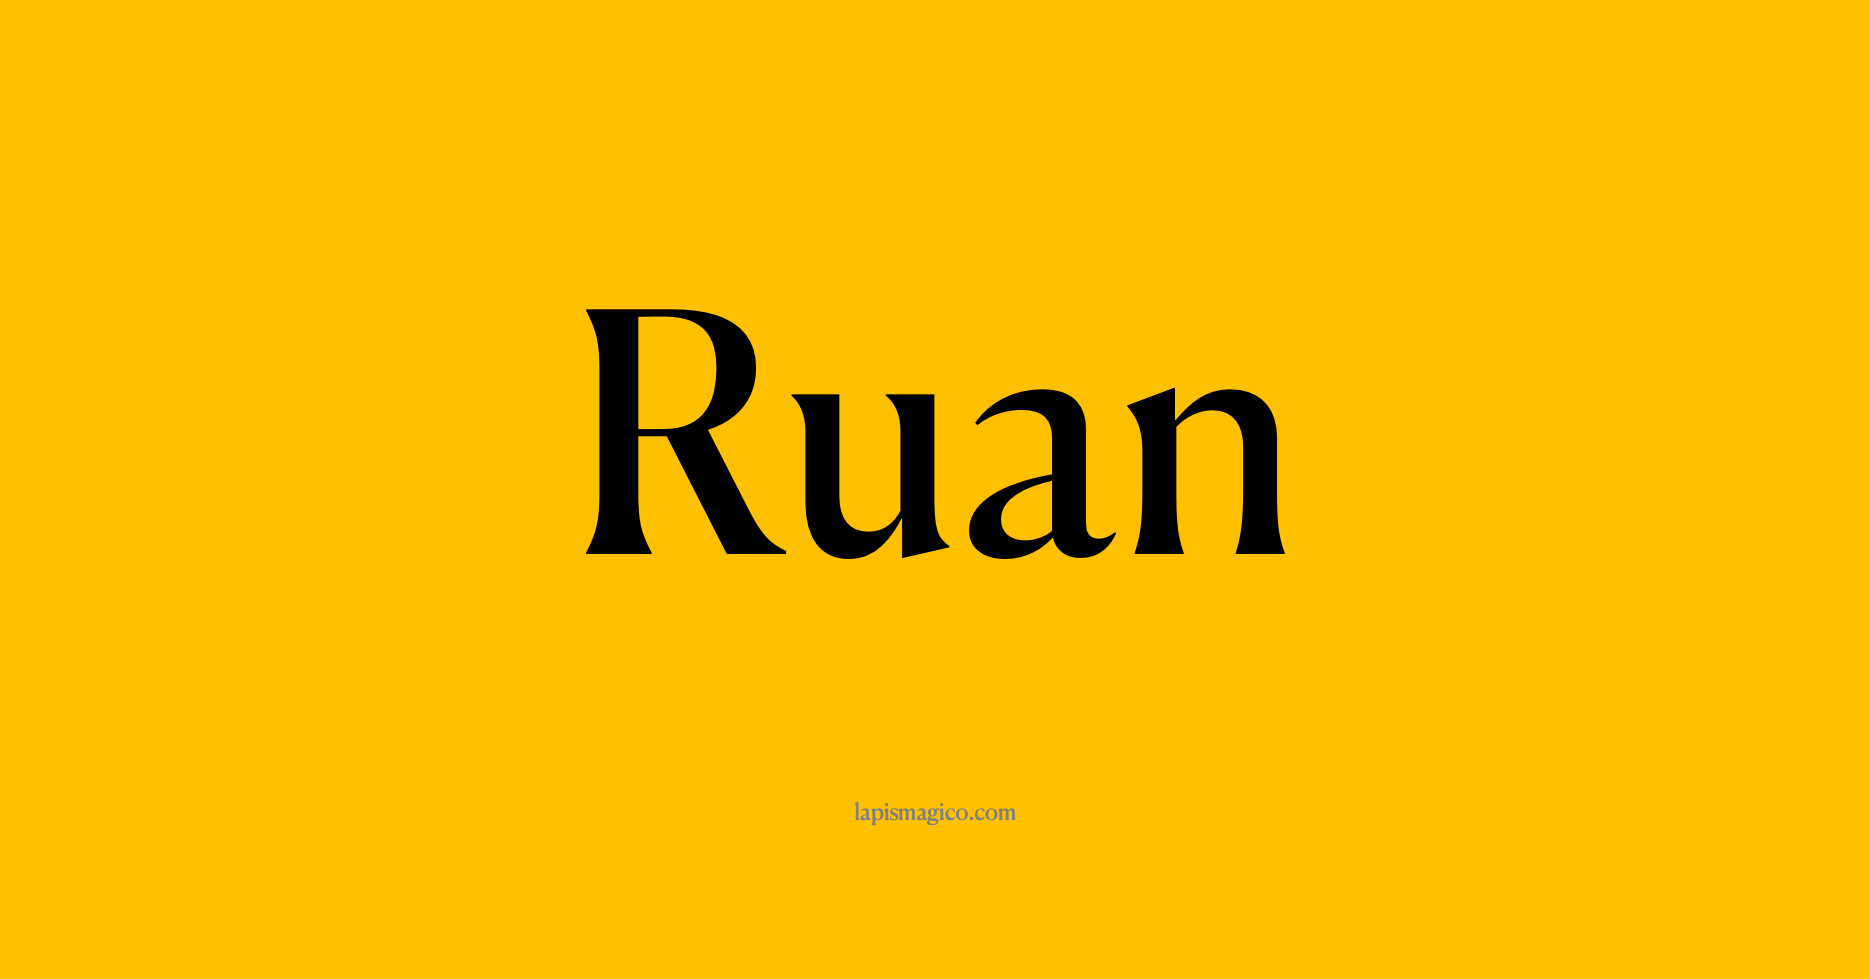 Nome Ruan